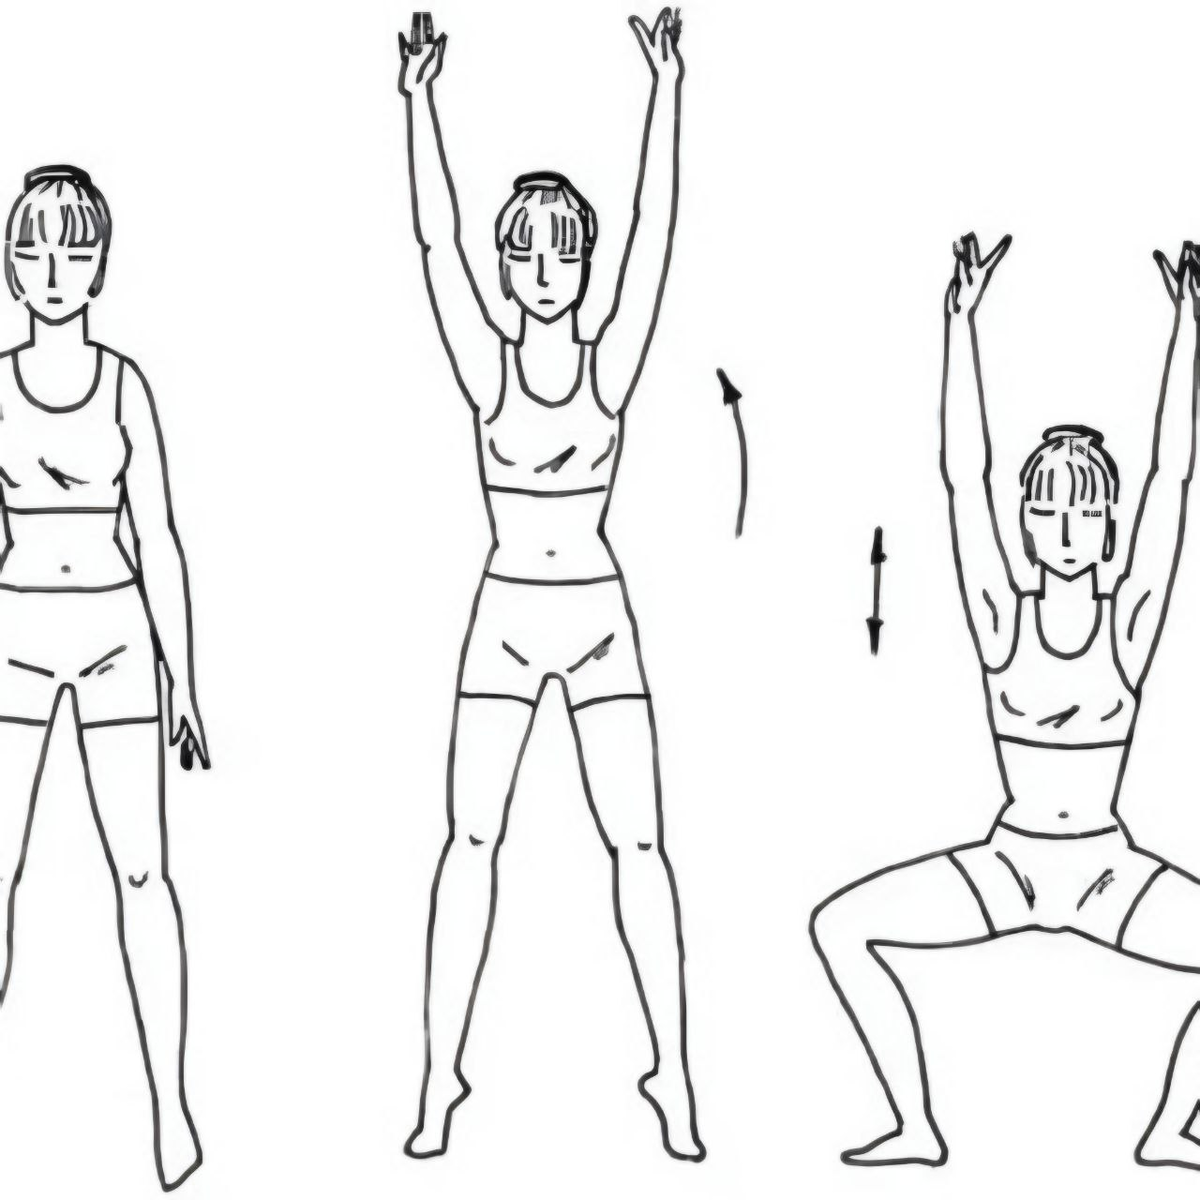 Прыжки вправо влево. Упражнения стоя. Упражнение поднятие рук в стороны. Ноги на ширине плеч руки вдоль туловища. Упражнения для туловища и ног.